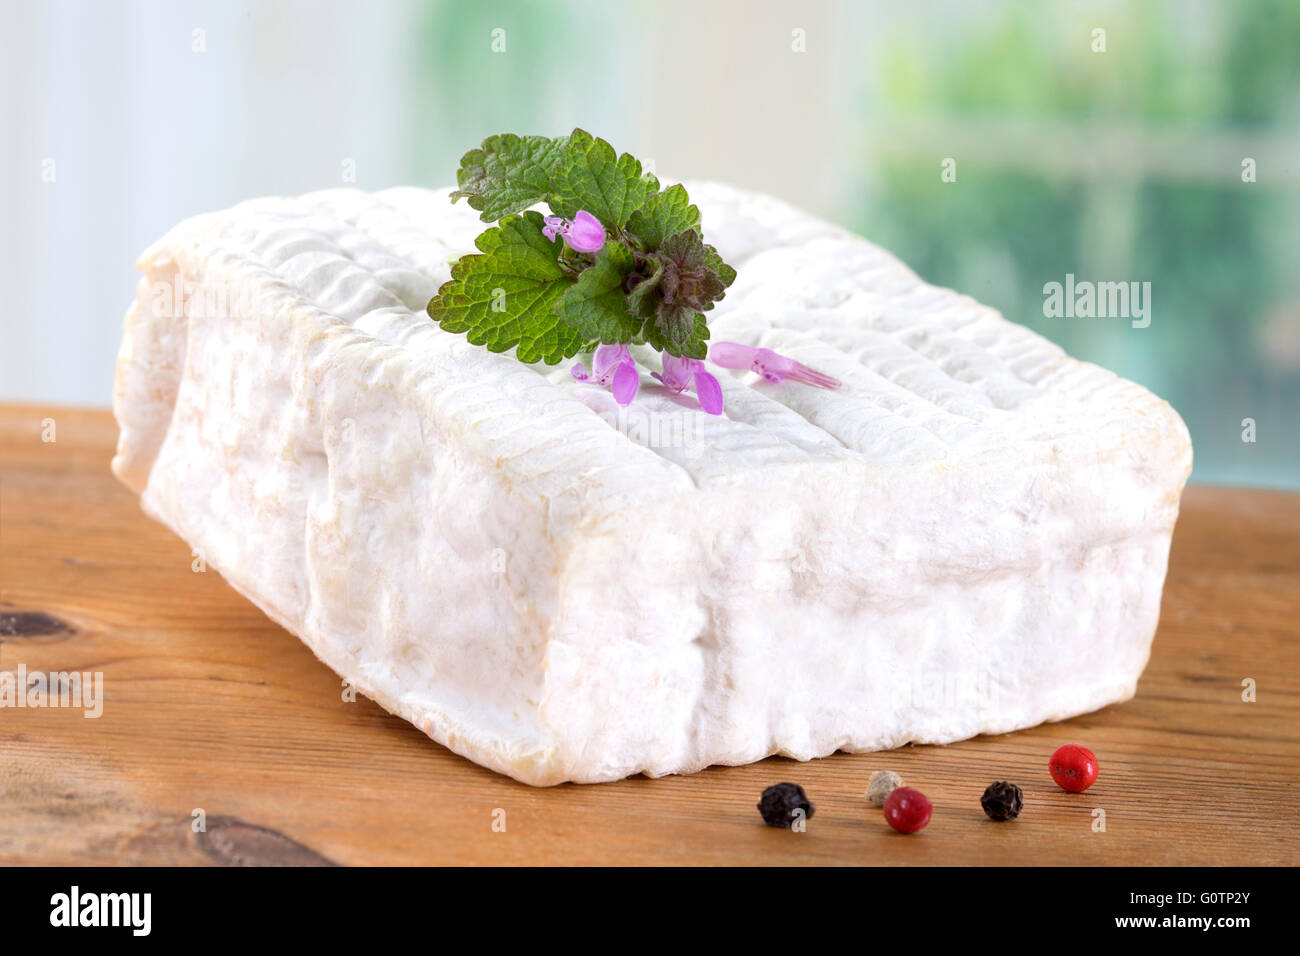 Un bloc de Pont-l'eveque fromage Normandie Française Banque D'Images